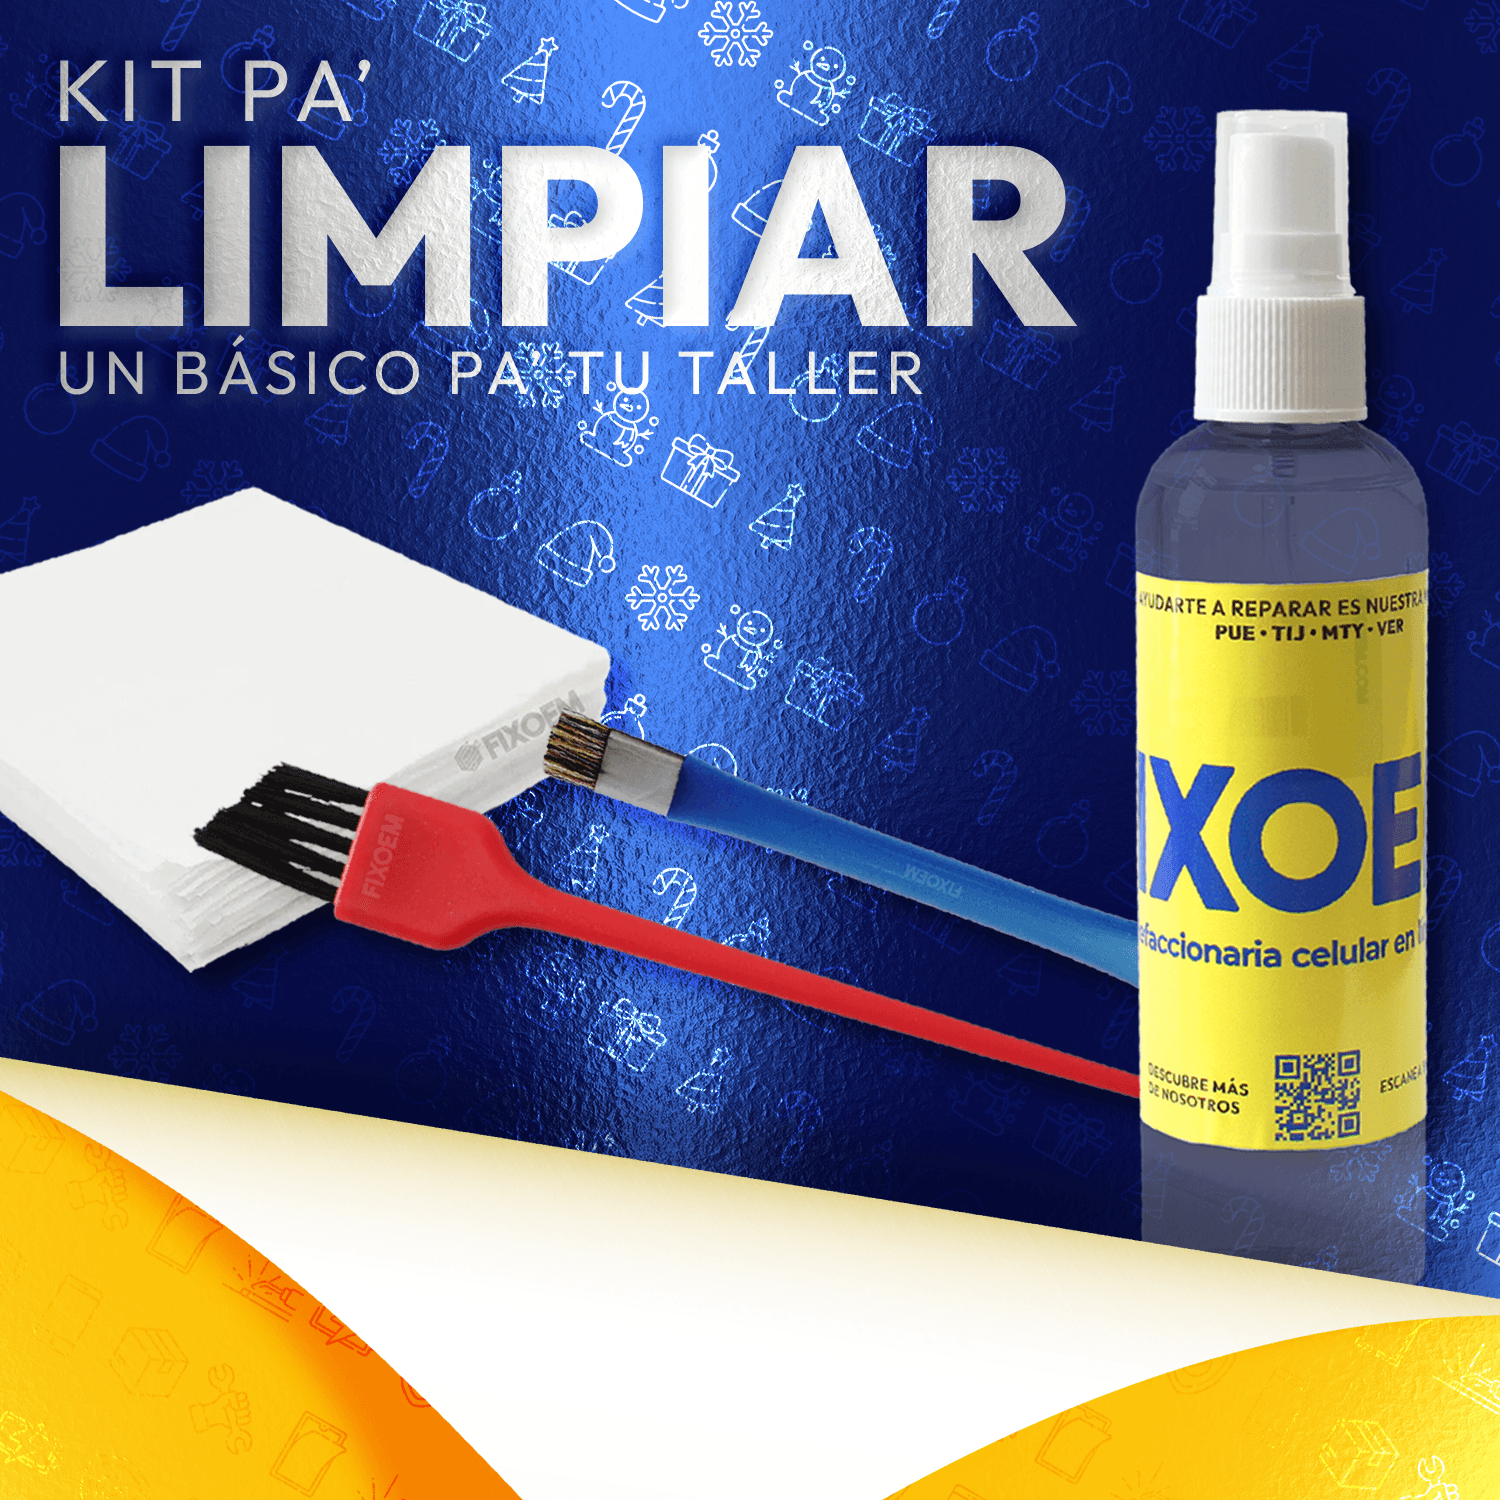 Kit Pa' Que Limpies | FixOEM a solo $ 190.00 Refaccion y puestos celulares, refurbish y microelectronica.- FixOEM